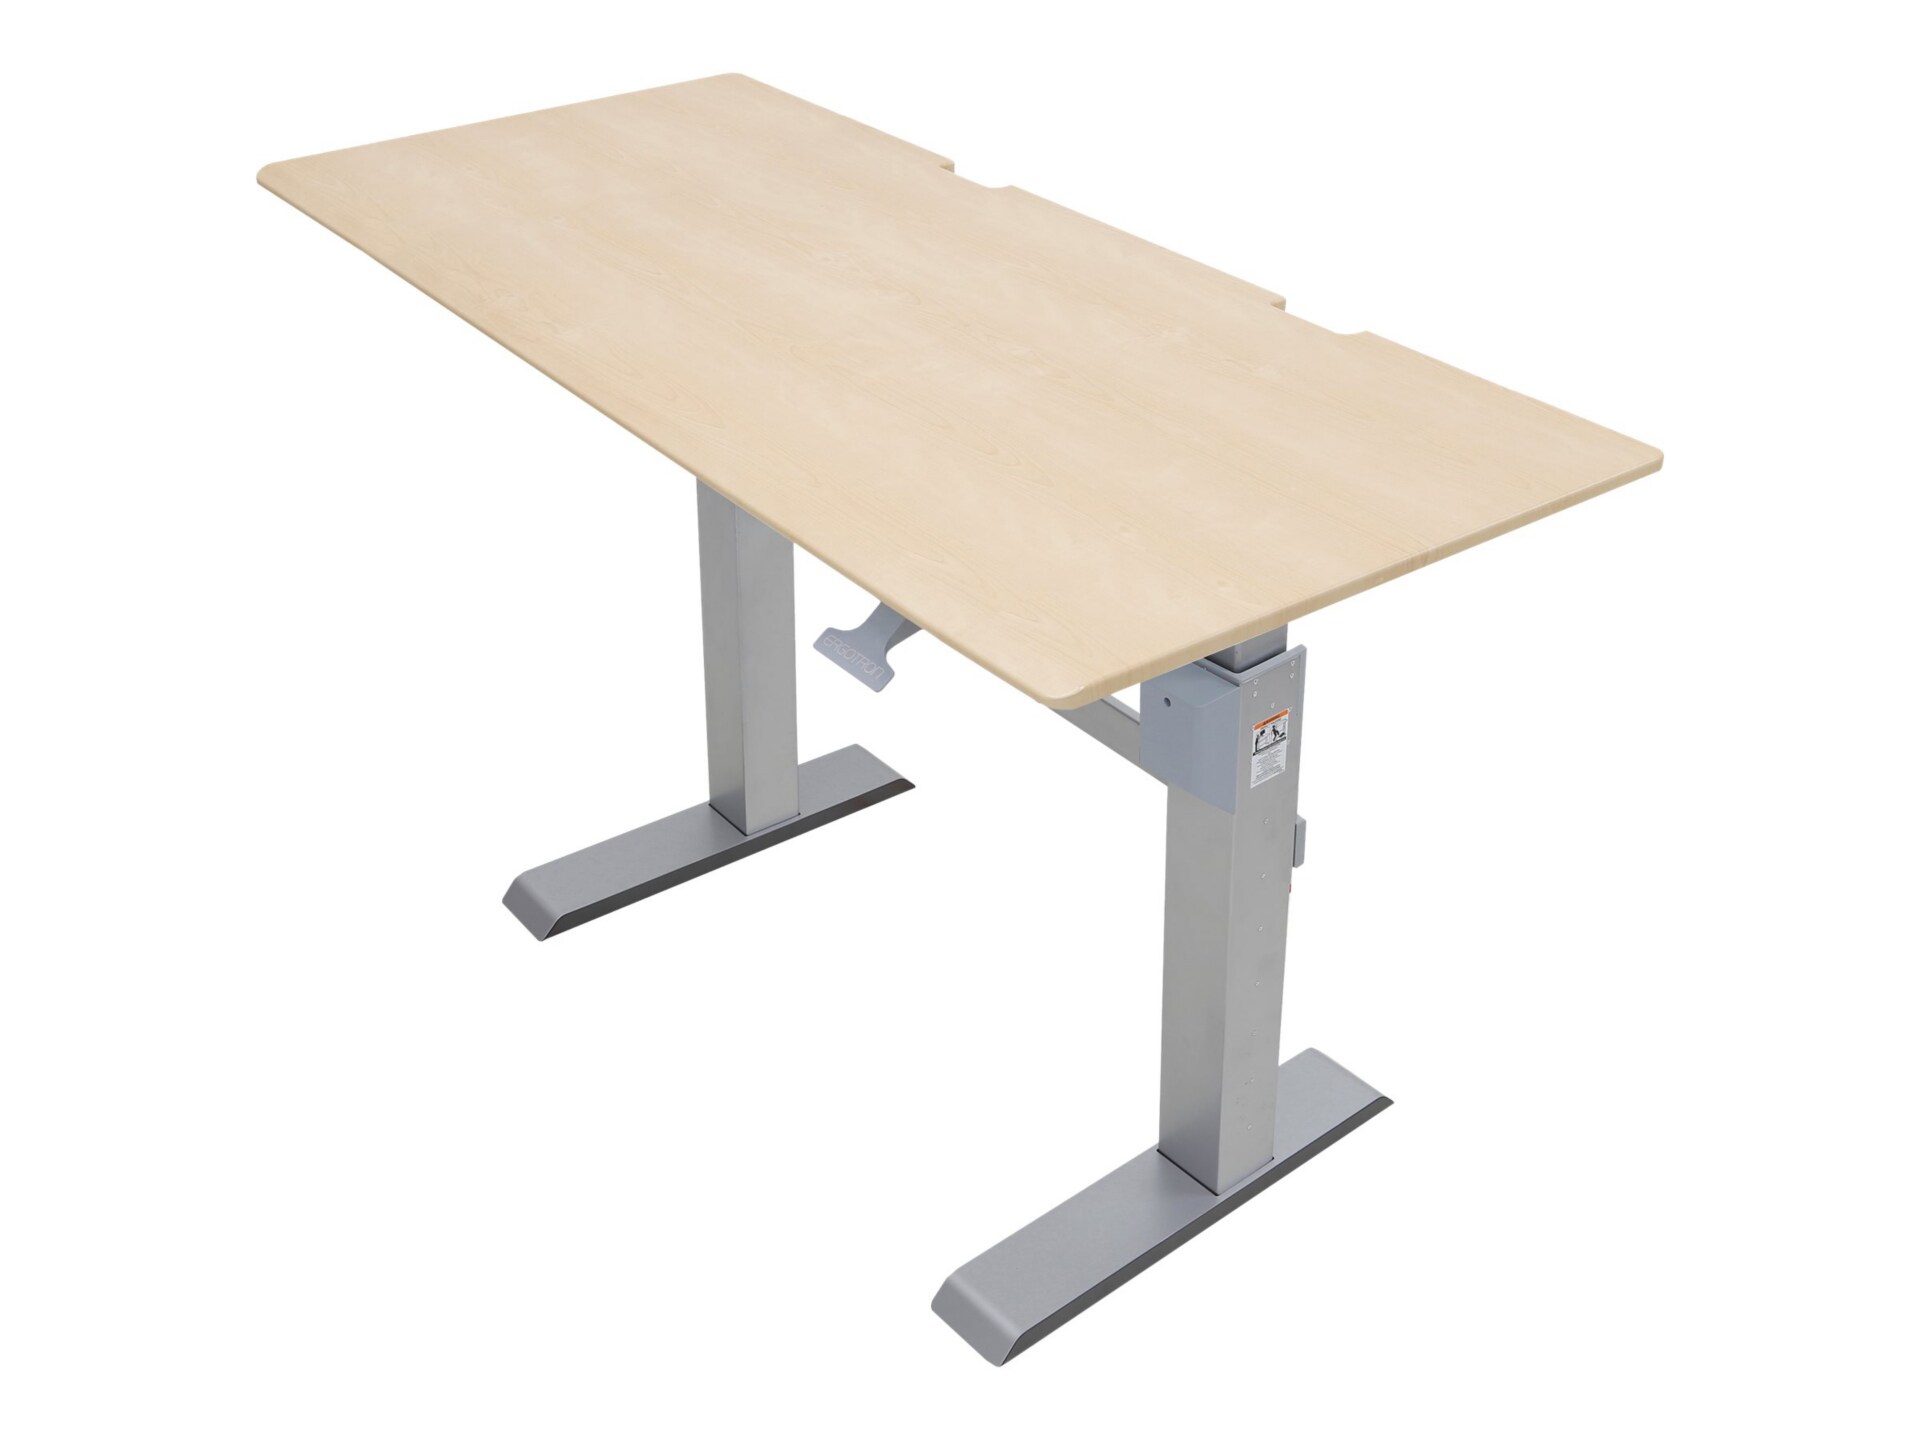 Ergotron WorkFit-DL sit/standing desk